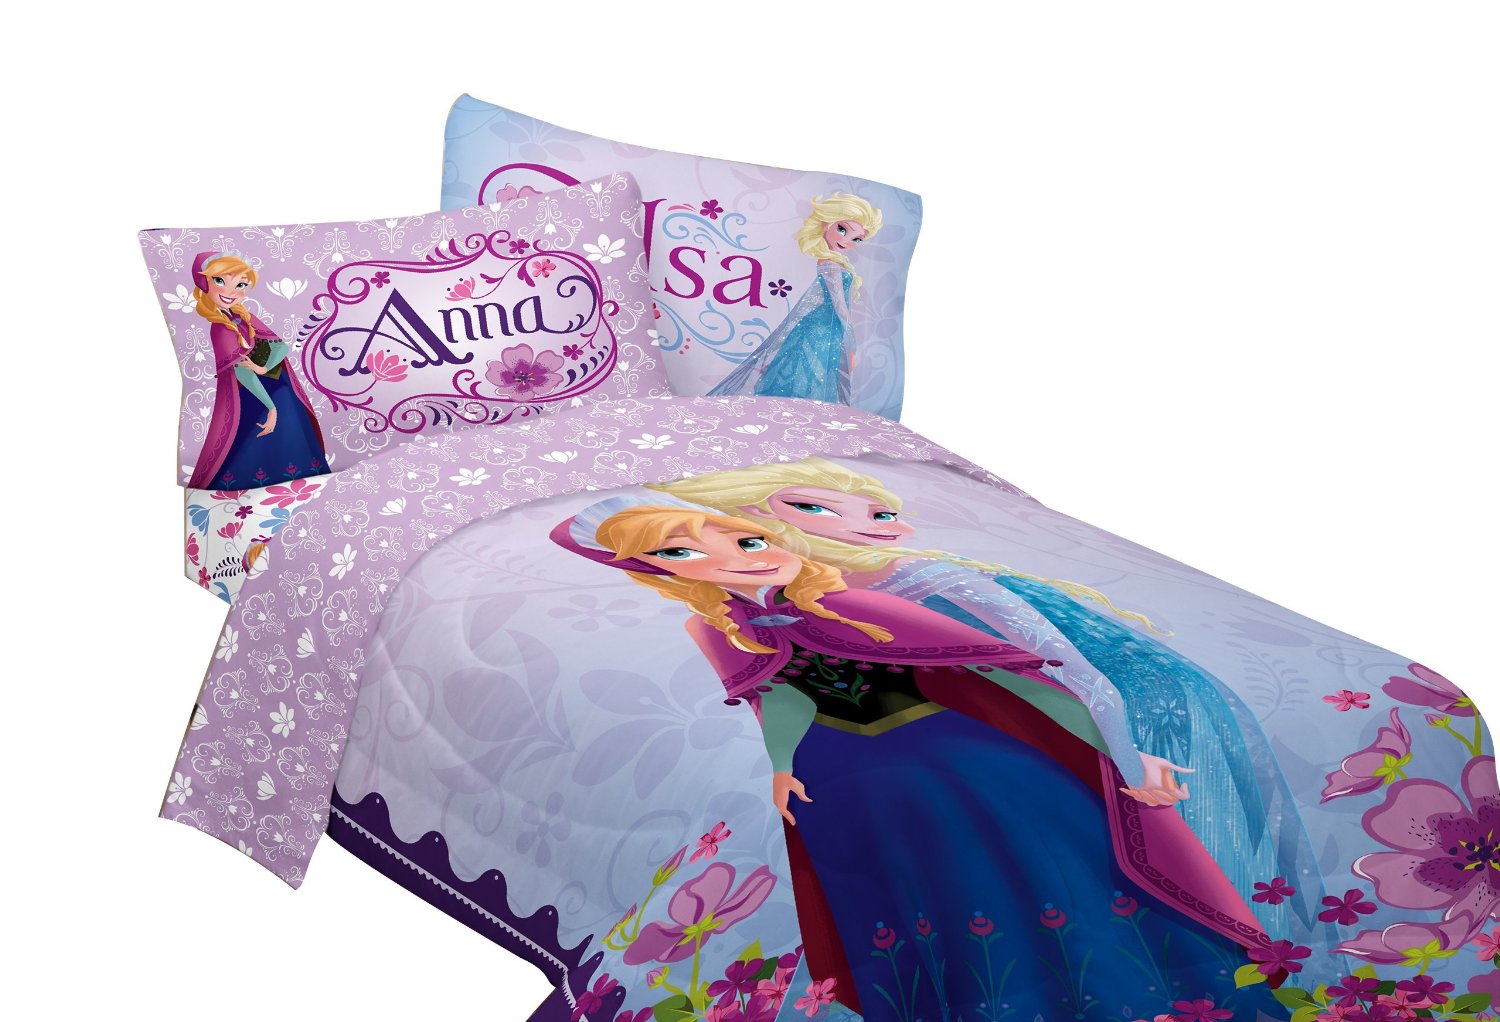 Disney Frozen Bed Comforter Only $29.88!